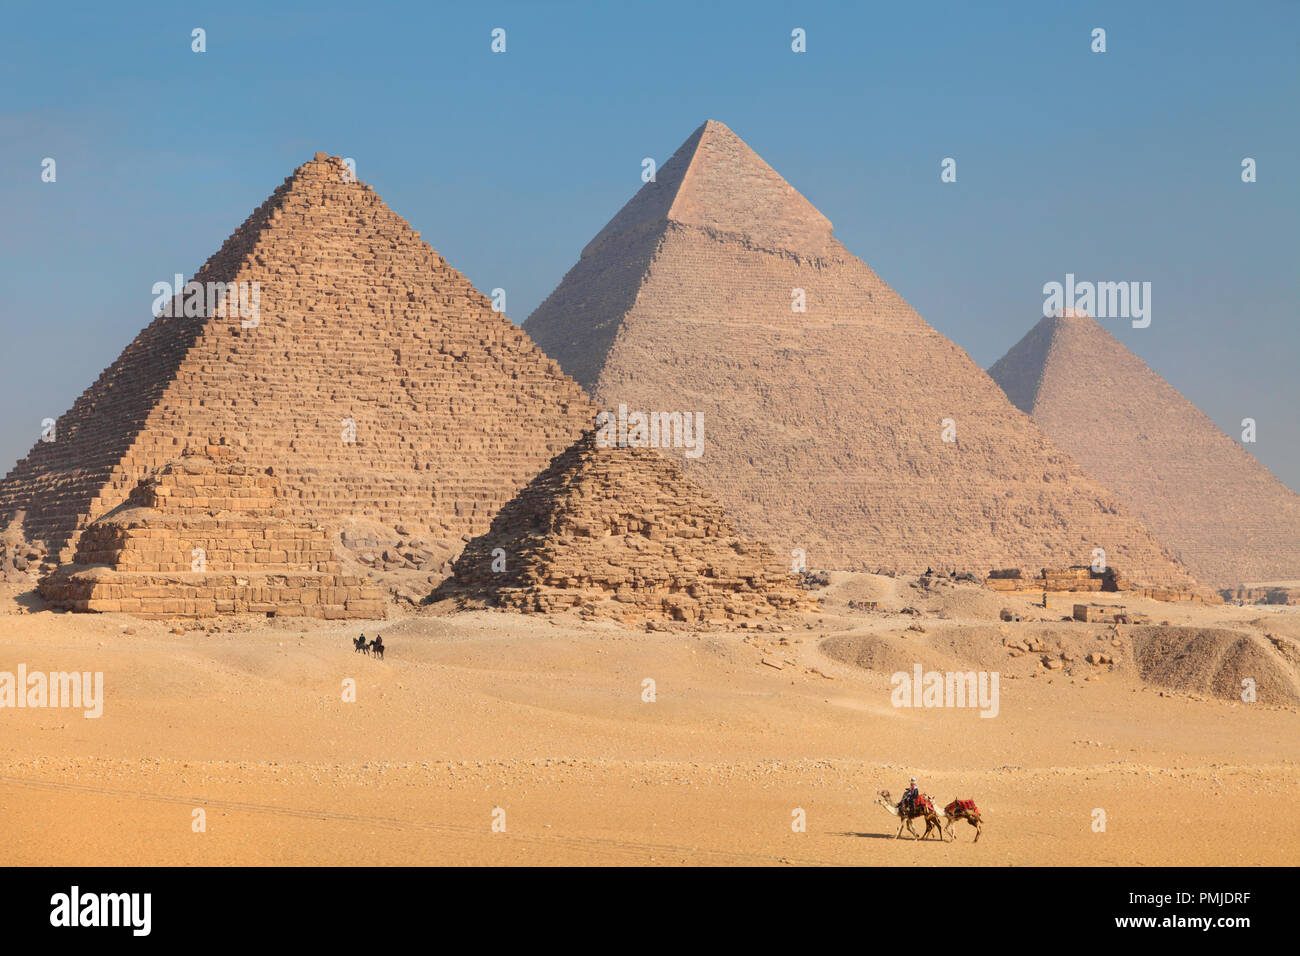 Les chameaux de promenades à travers le désert de sable sur le plateau près de Gizeh Les pyramides de l'Égypte Banque D'Images